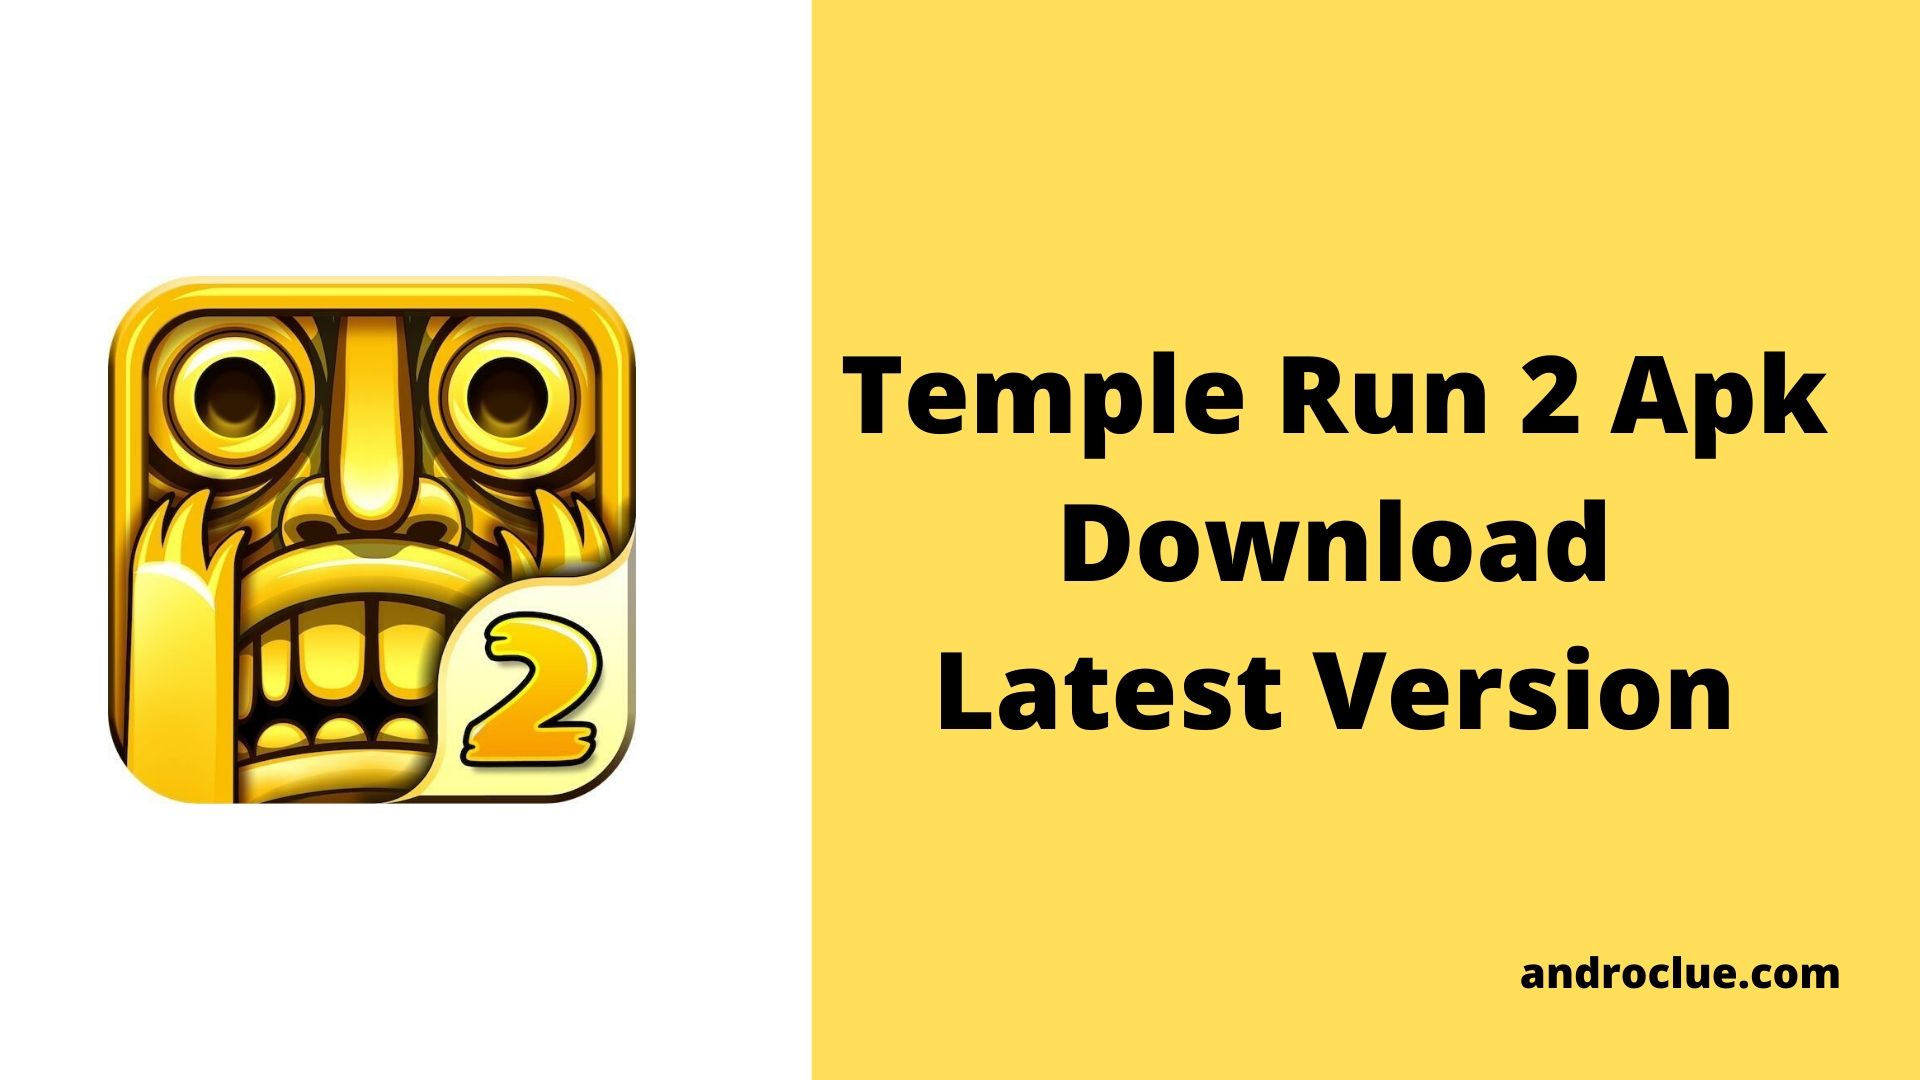 Temple Run 2 Apk Download da versão mais recente para Android (2019)